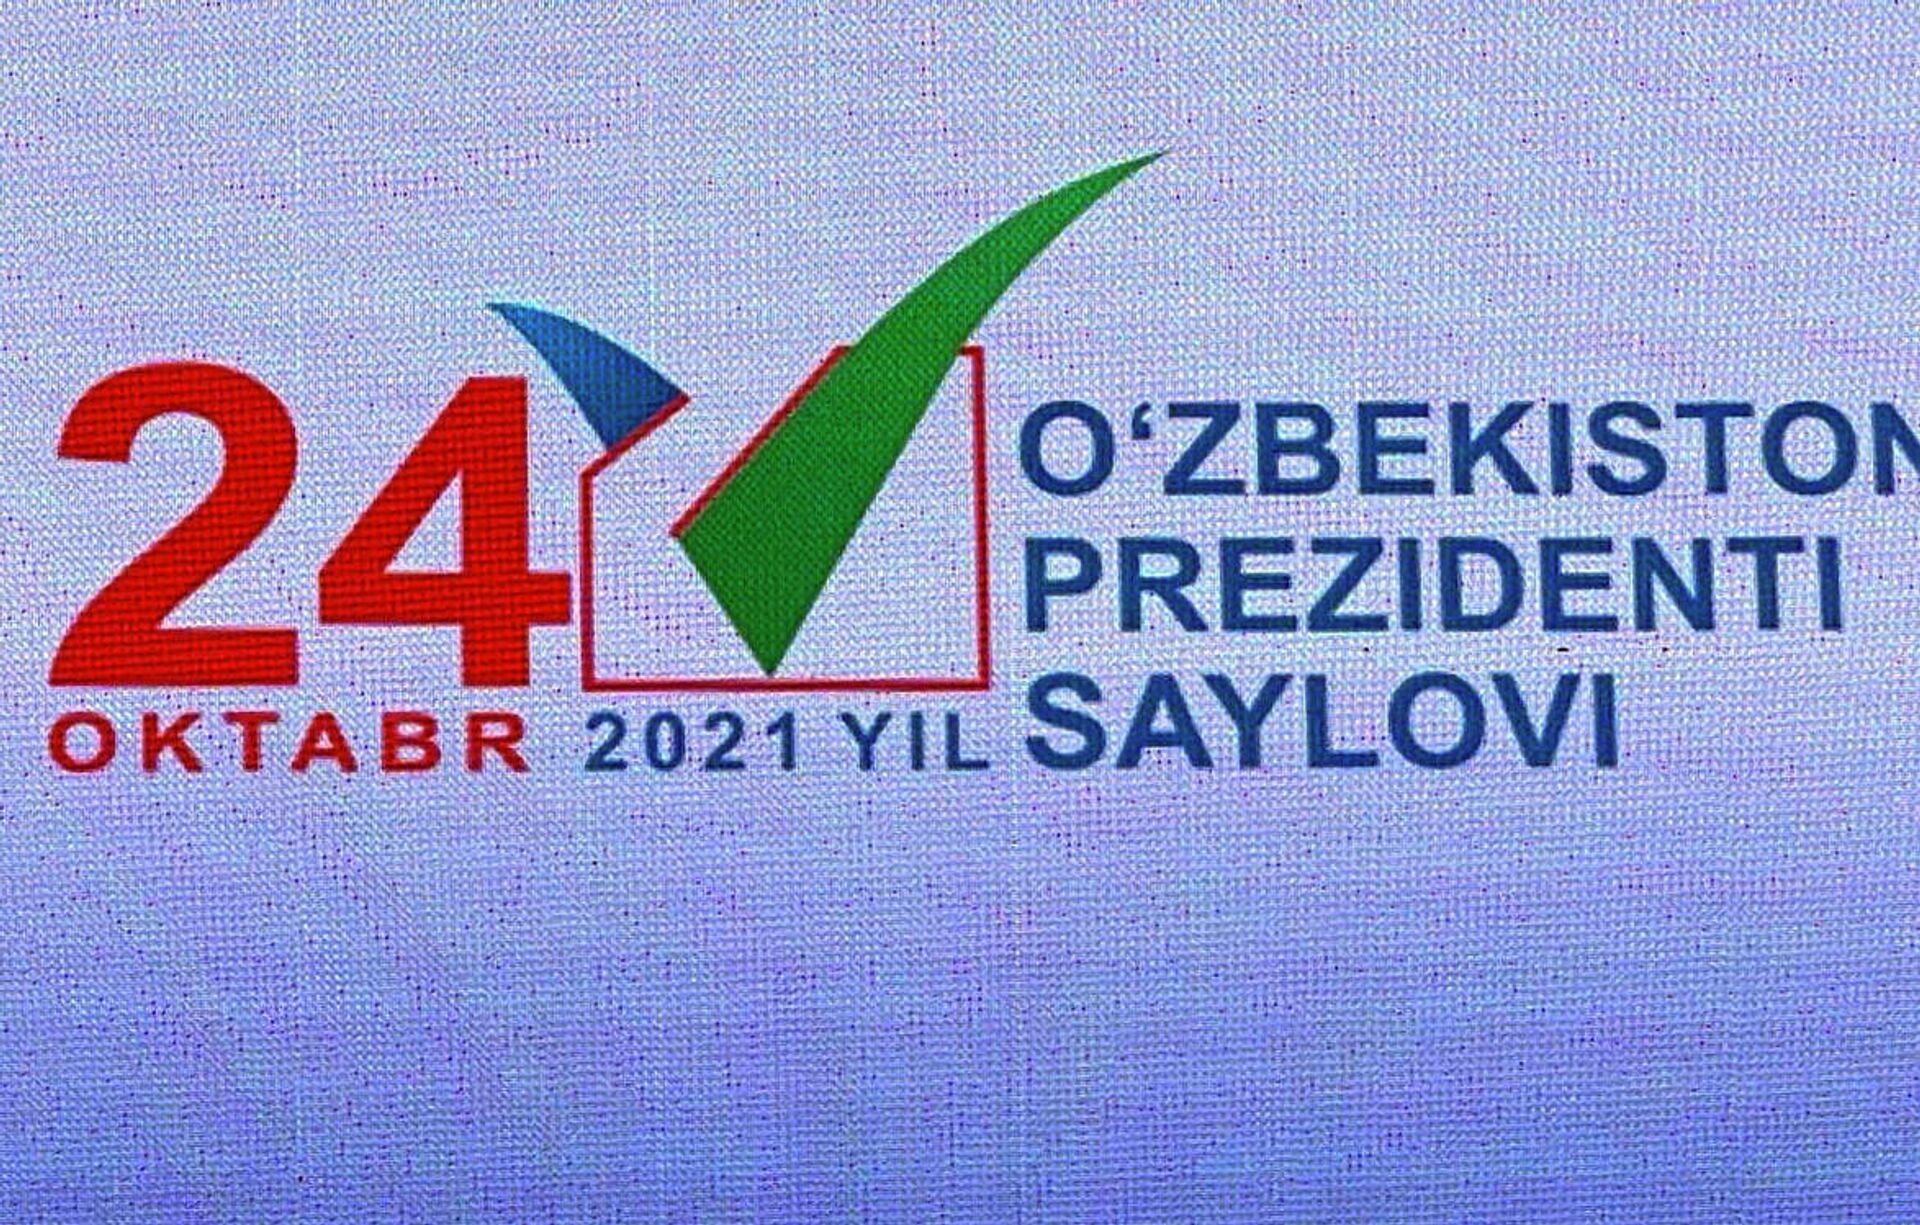 В Ташкенте состоялась презентация логотипа президентских выборов - Sputnik Узбекистан, 1920, 28.07.2021